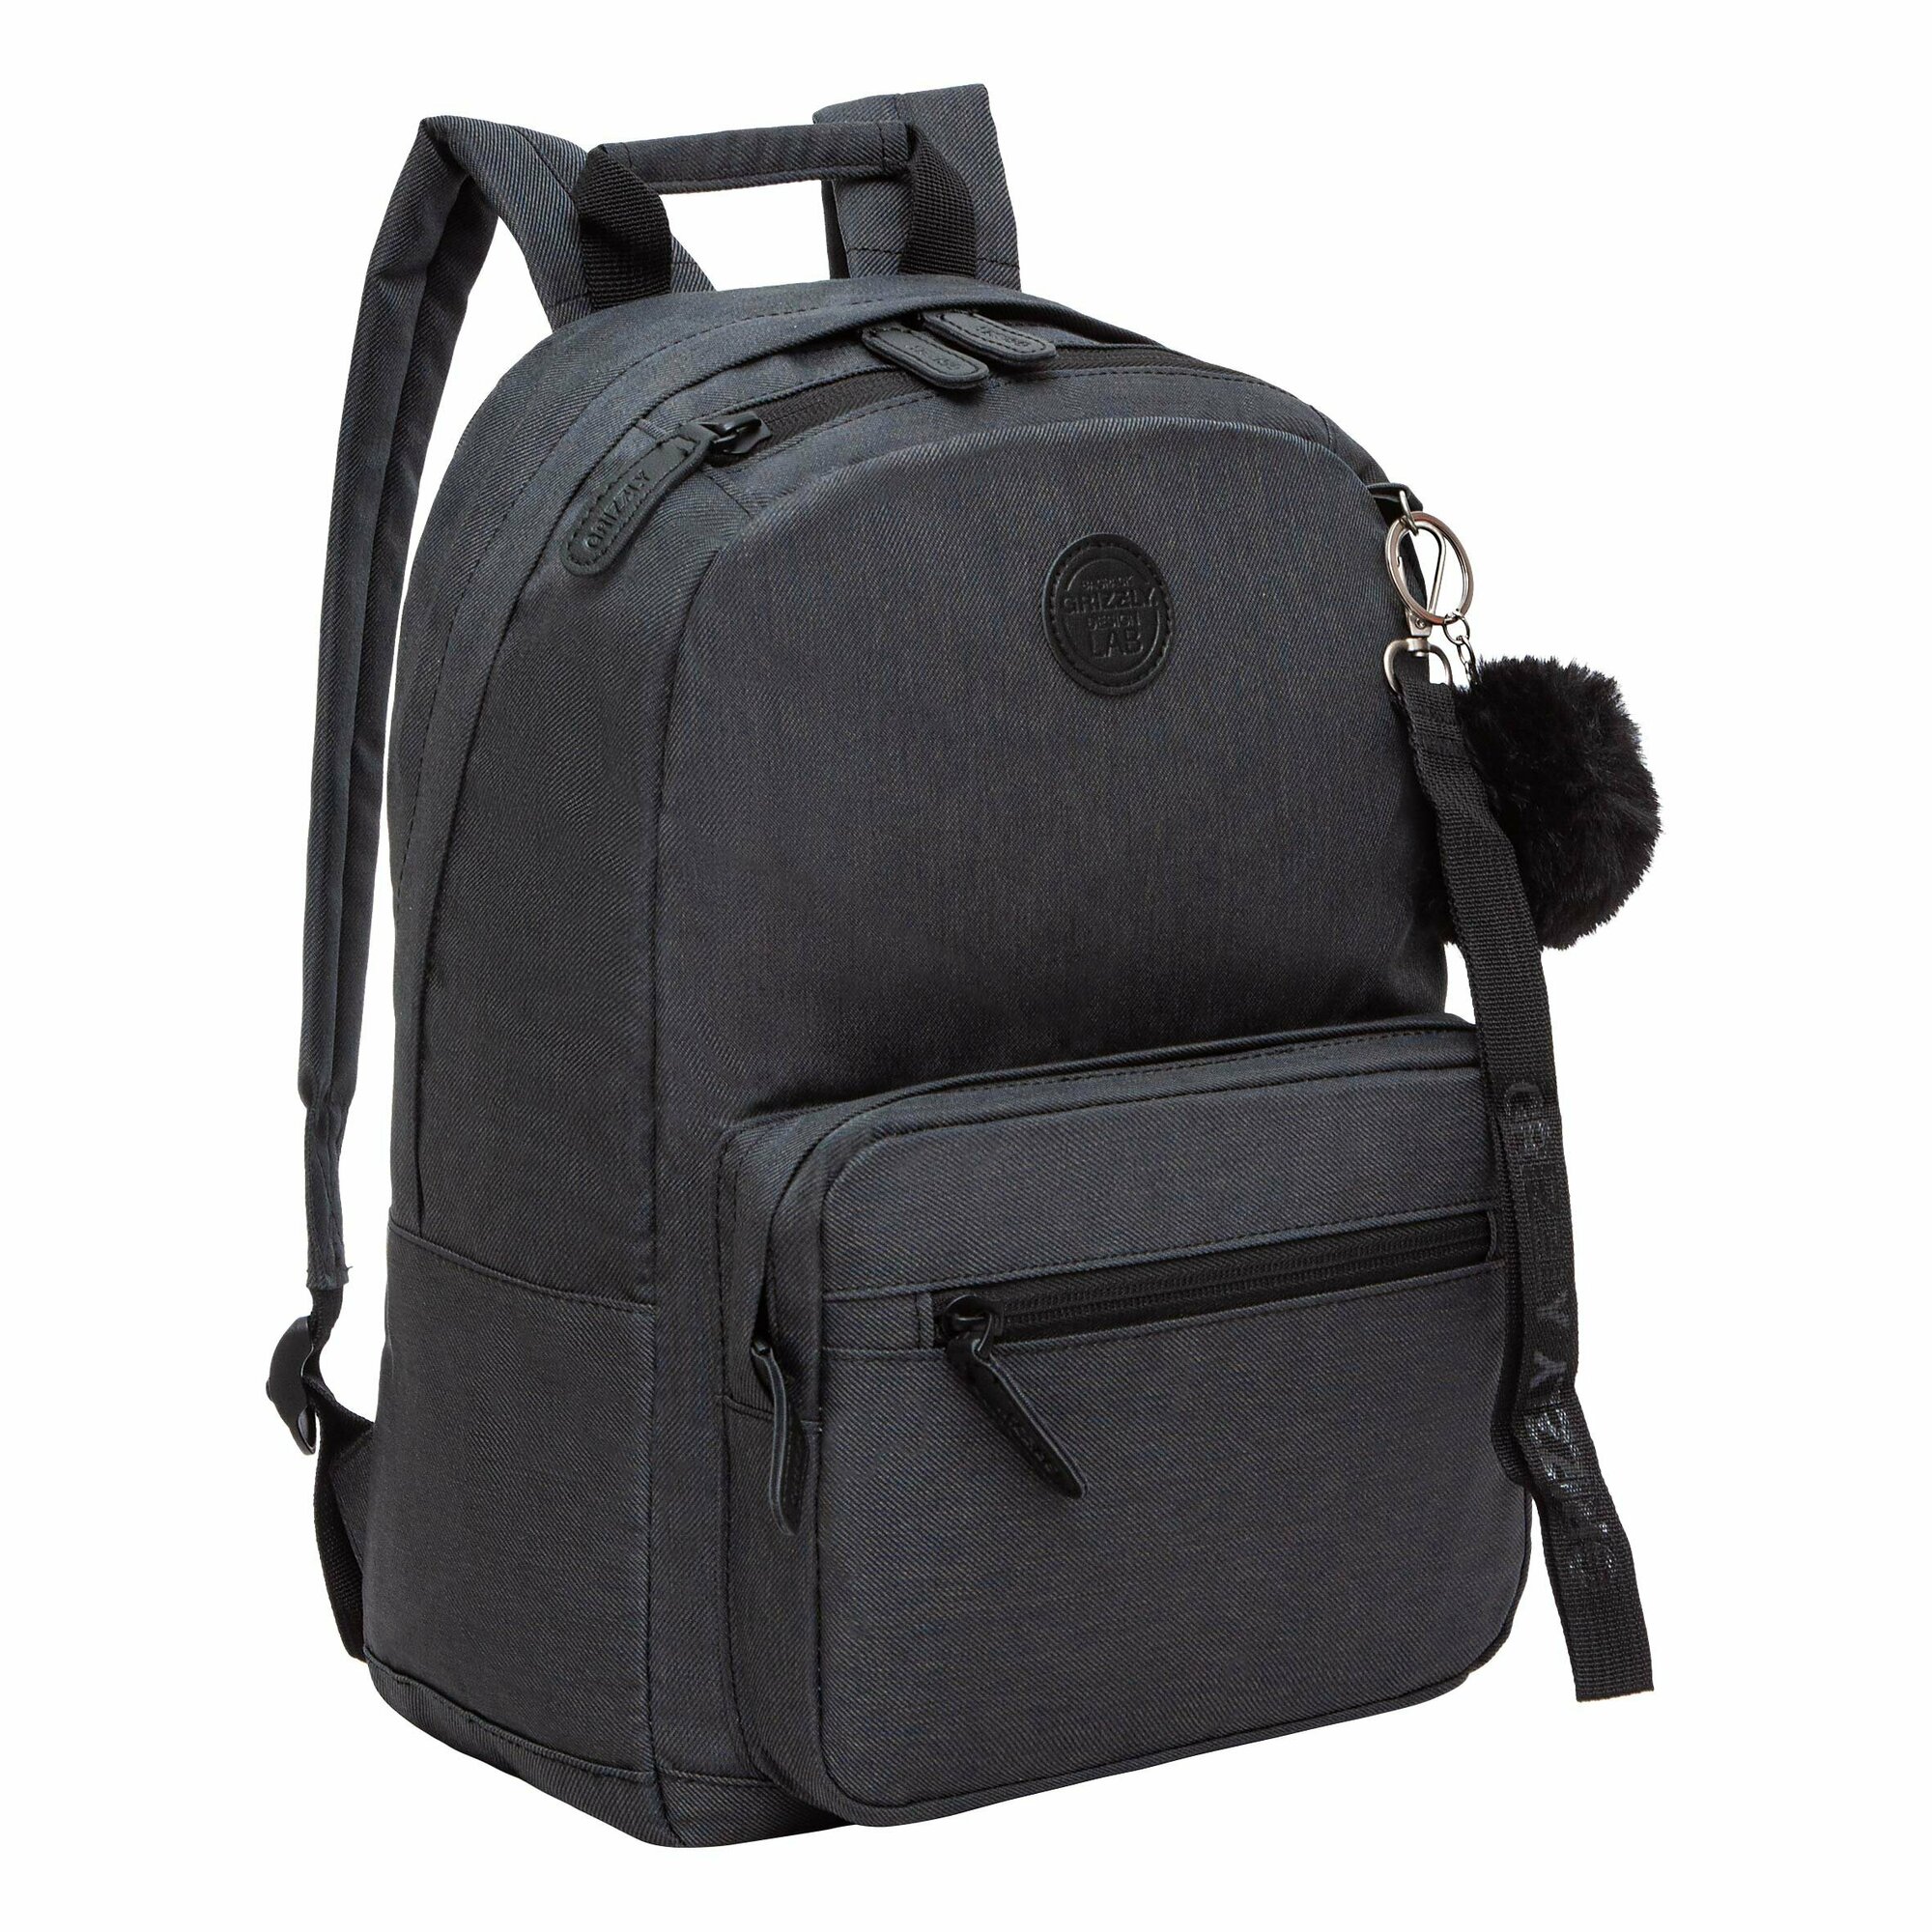 Легкий рюкзак GRIZZLY городской с карманом для ноутбука 13", одним отделением, женский RXL-321-1/5